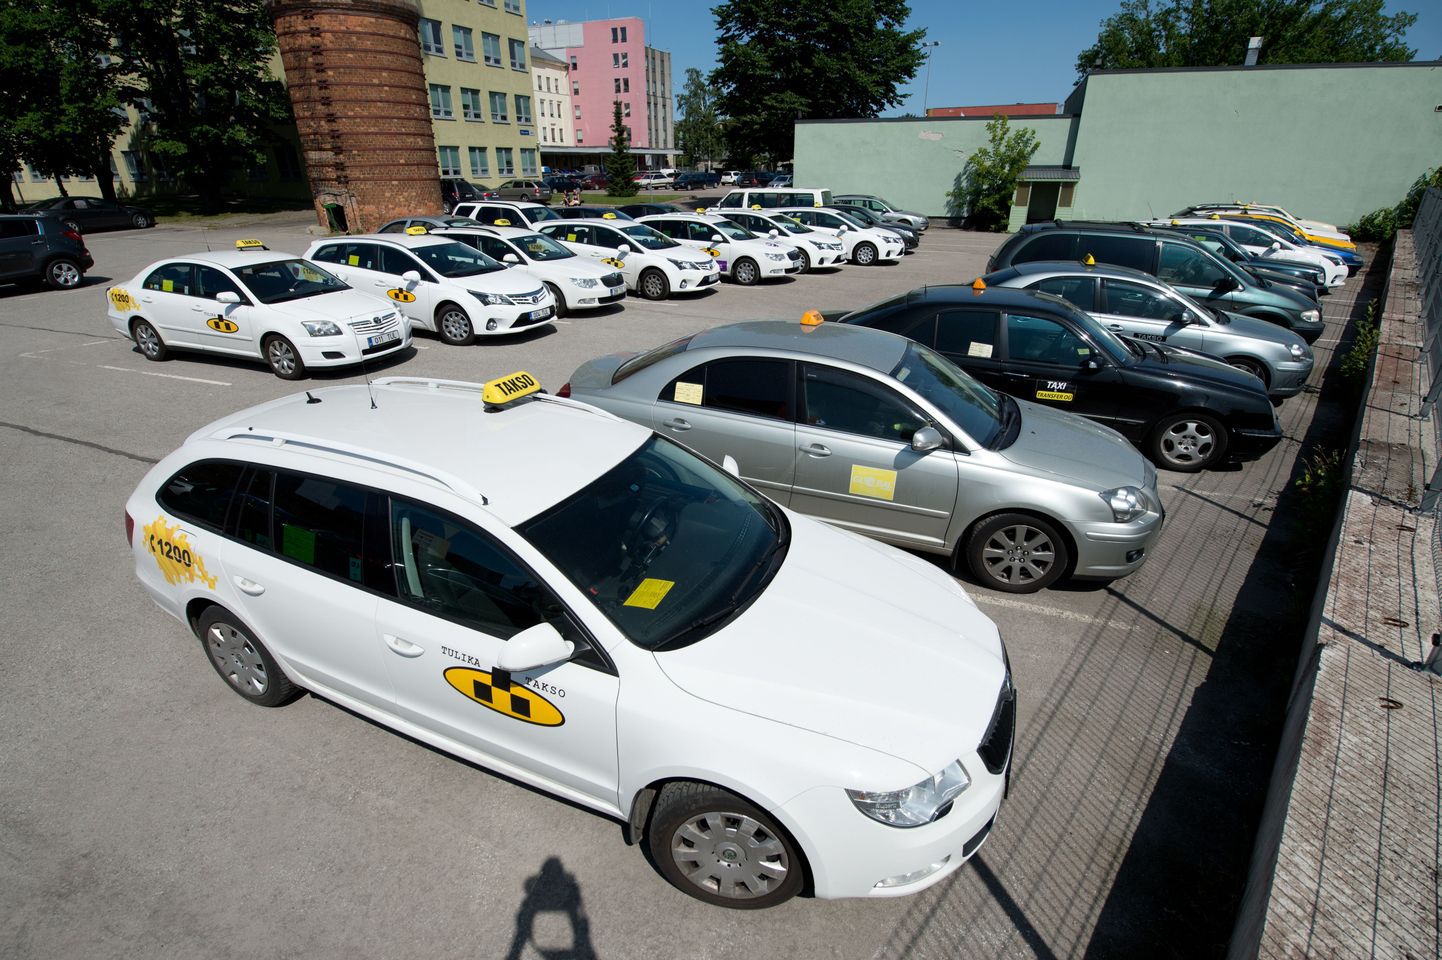 Автомобили подозреваемых таксистов во дворе отделения полиции на Пярнуском шоссе